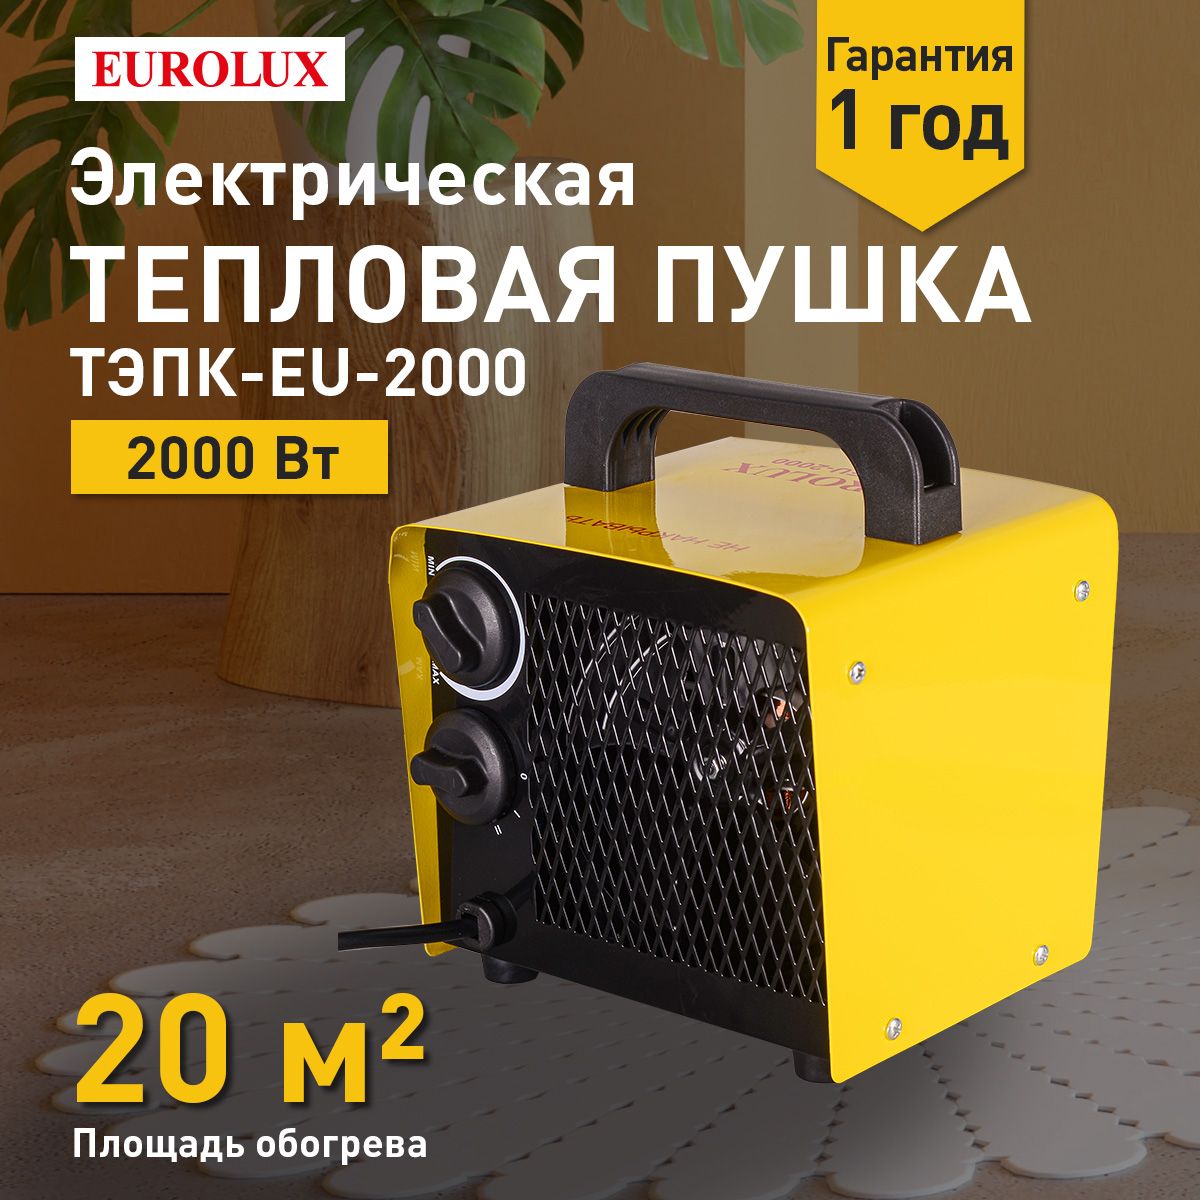 ТепловаяэлектрическаяпушкаТЭПК-EU-2000Eurolux,Мощность2кВт,220-230В,2режима,терморегулятор